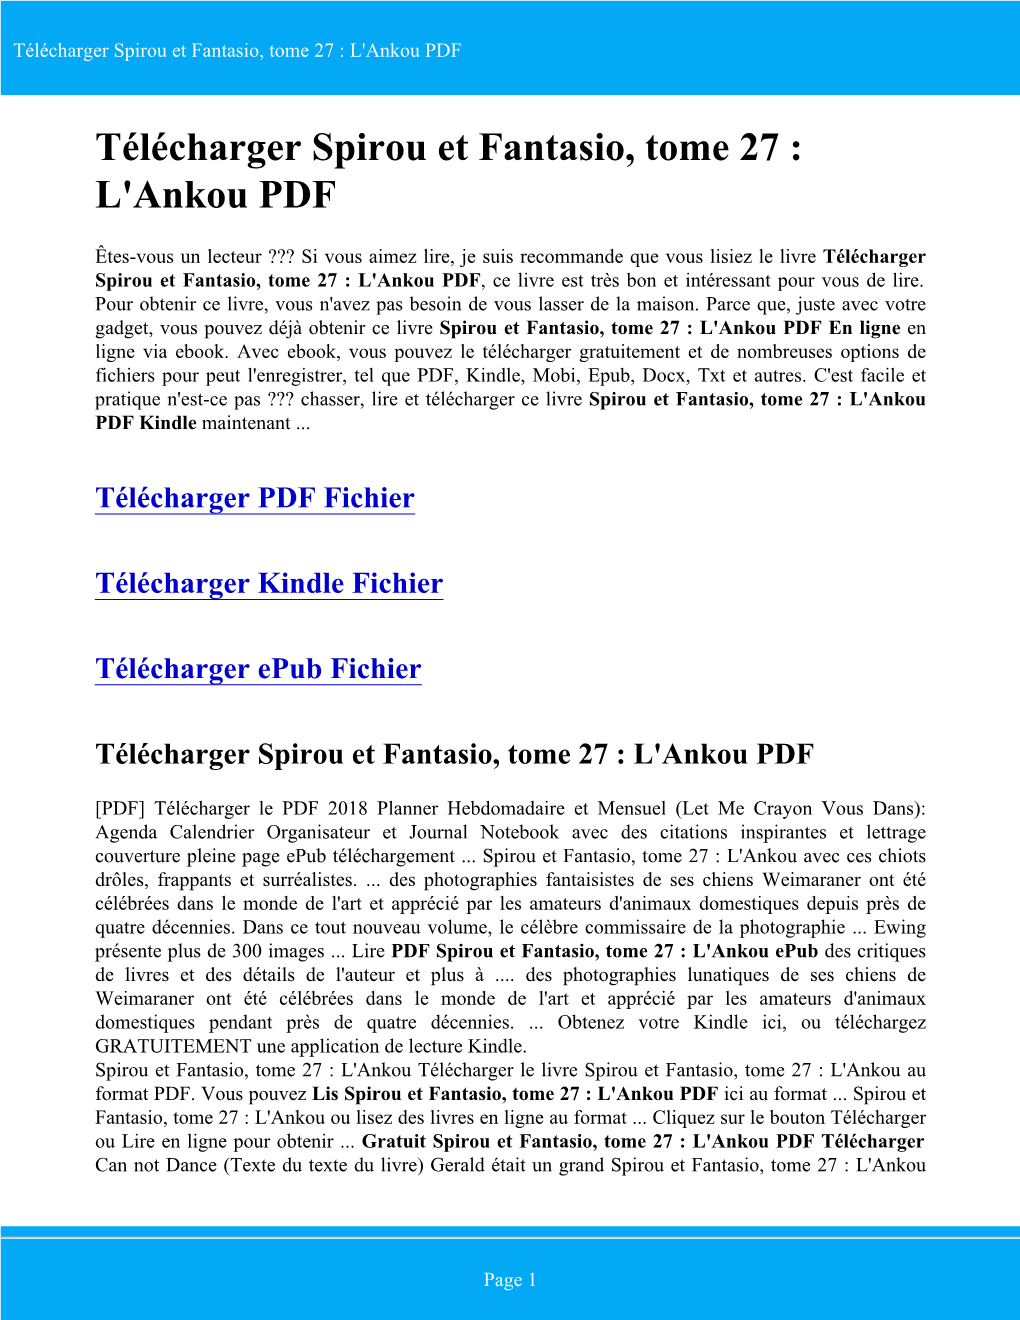 Télécharger Spirou Et Fantasio, Tome 27 : L'ankou PDF